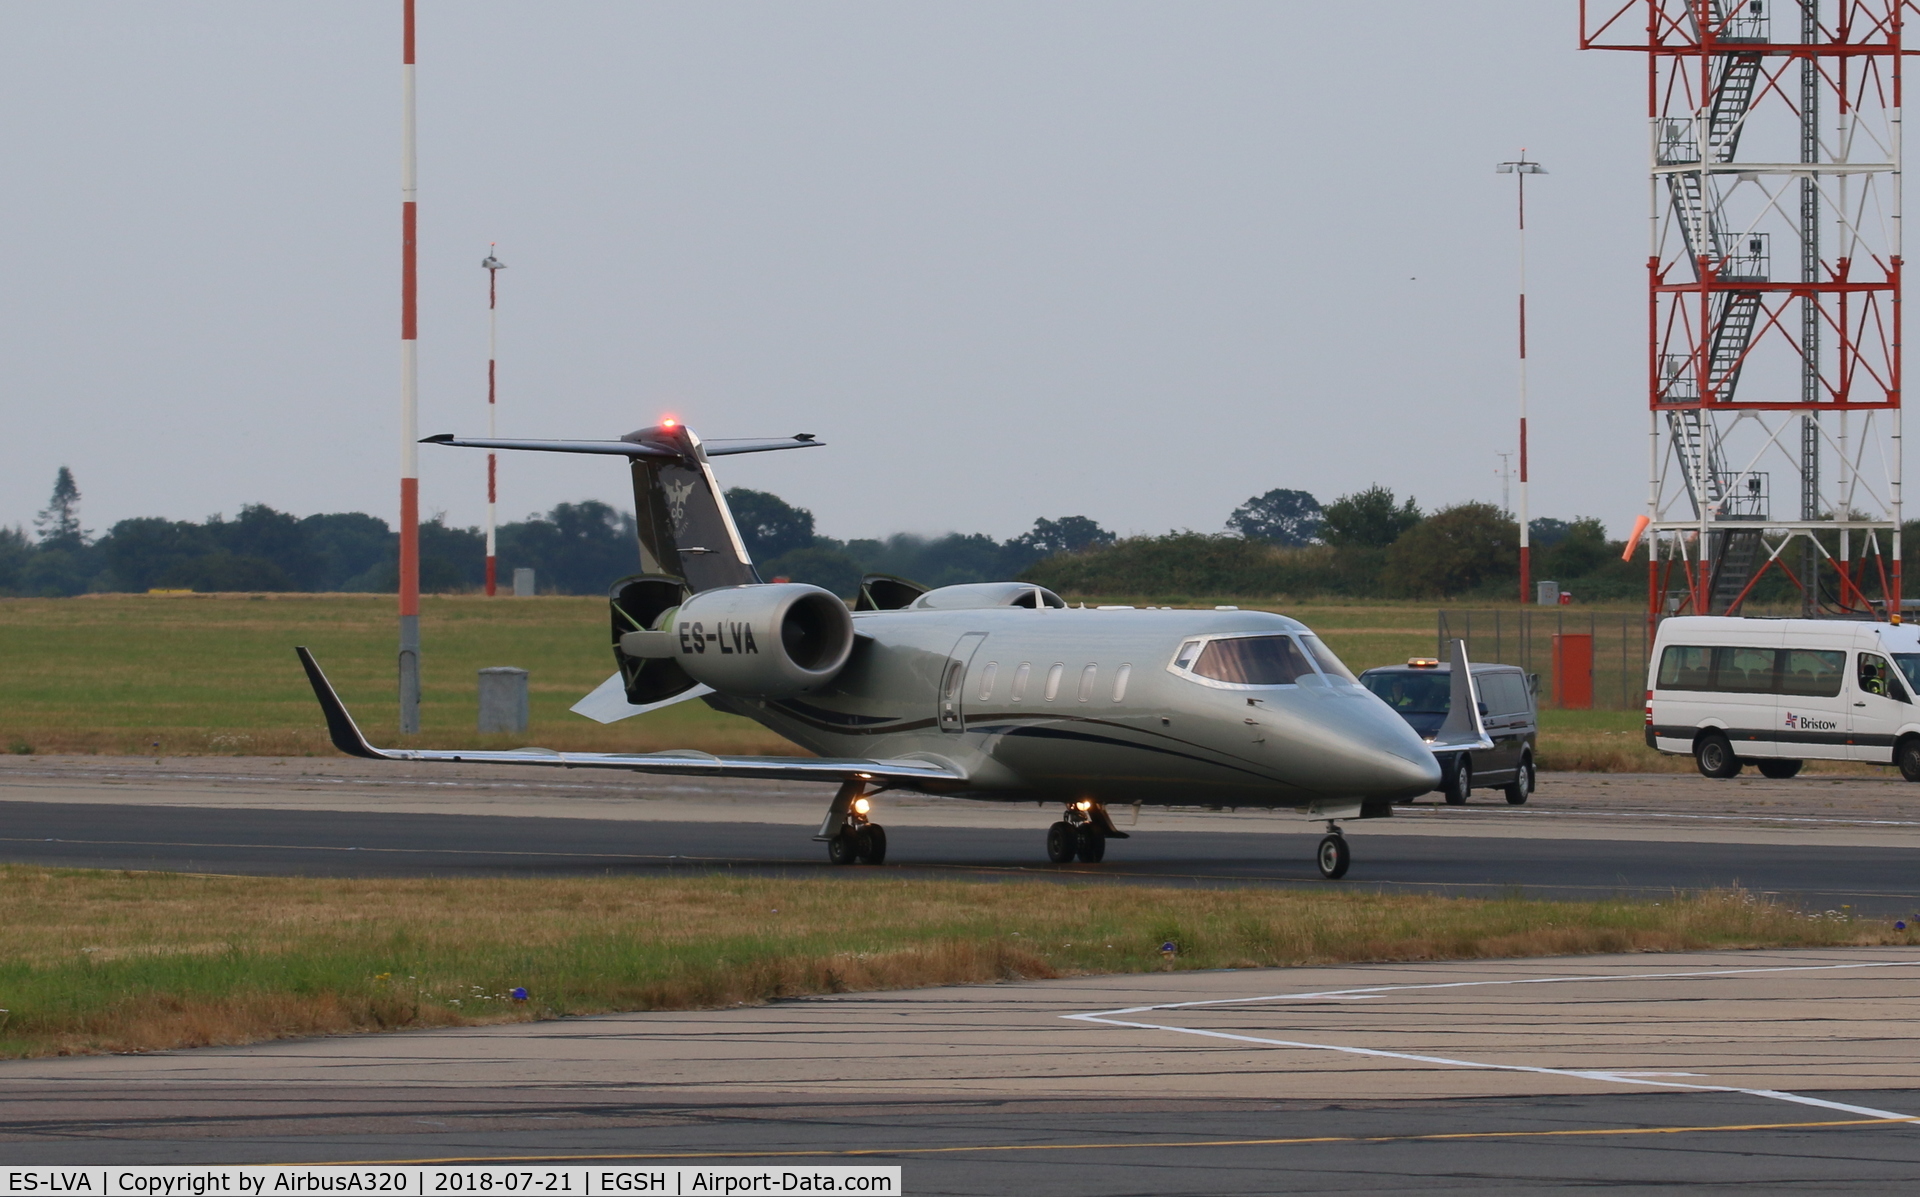 ES-LVA, 2009 Learjet 60 C/N 60-372, departing